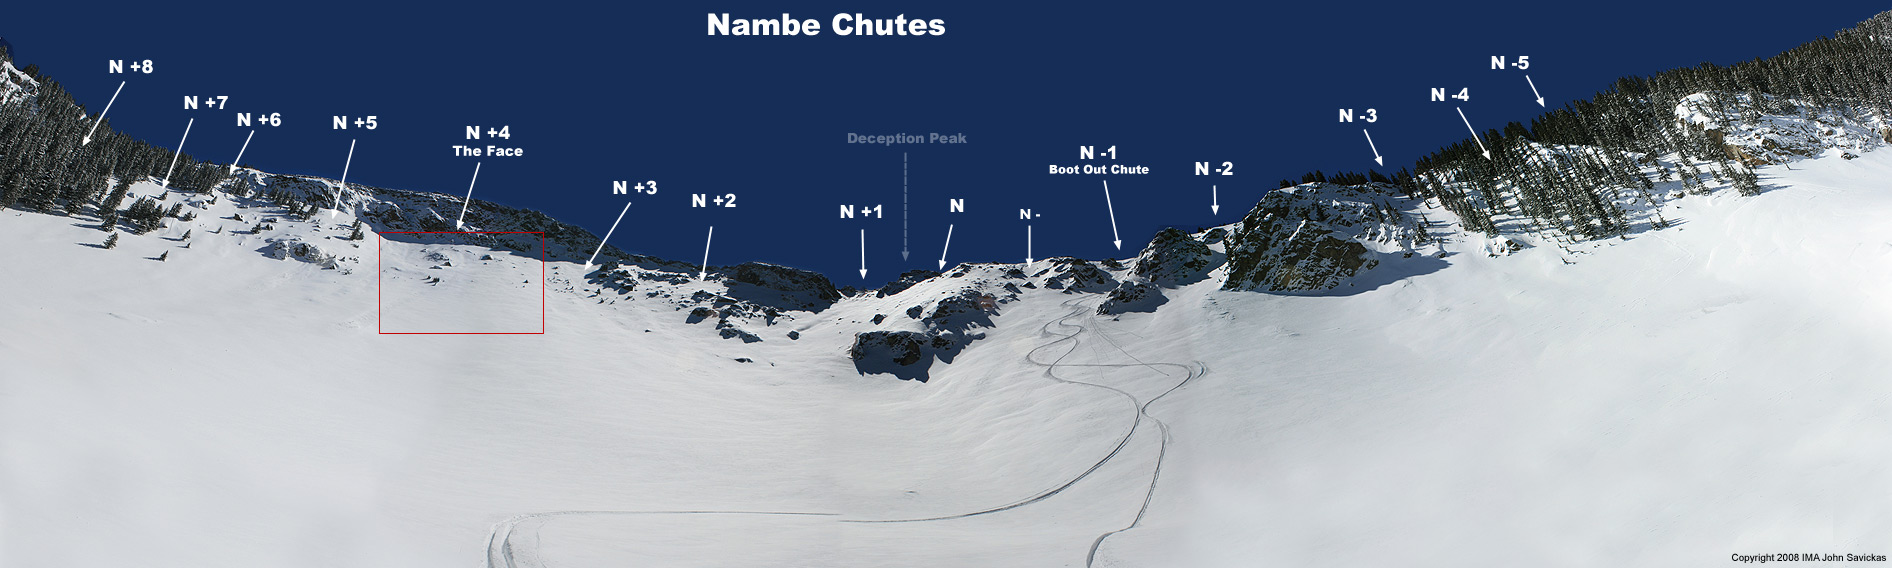 Nambe Chutes